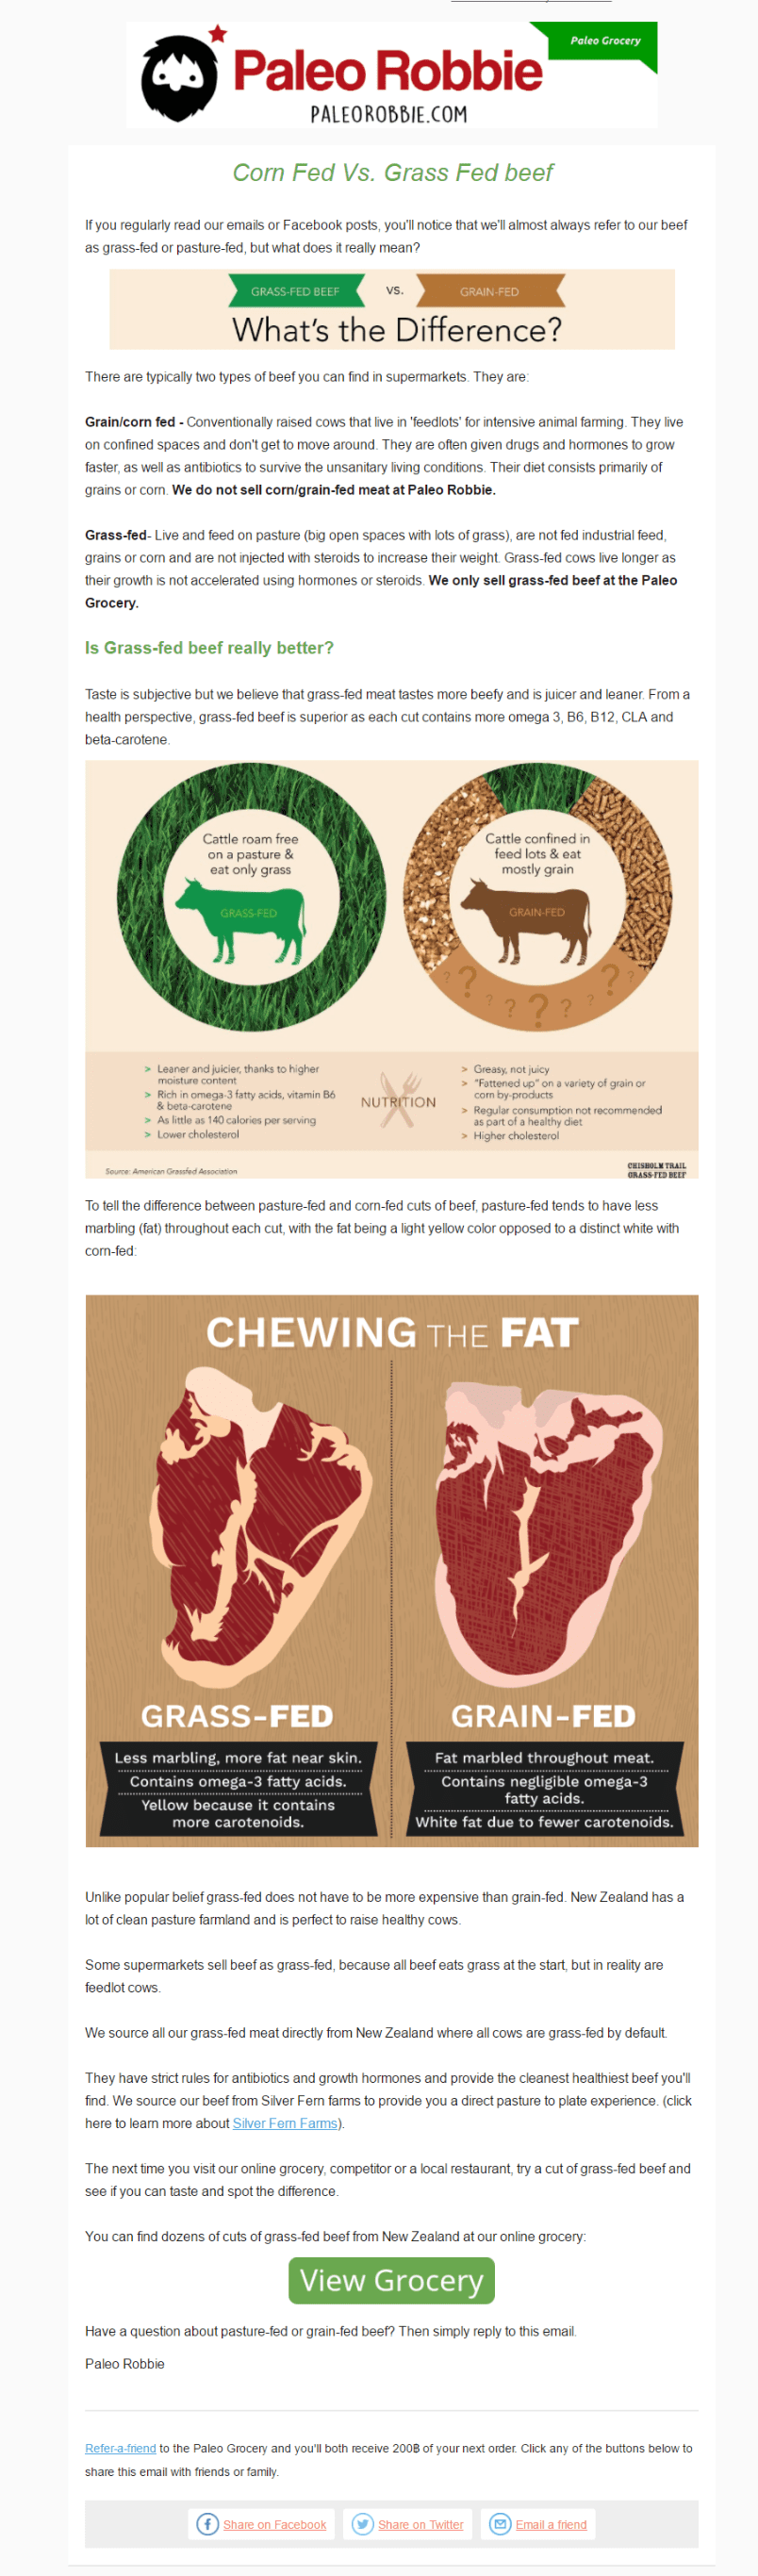 paleo robbie beef newsletter comparison